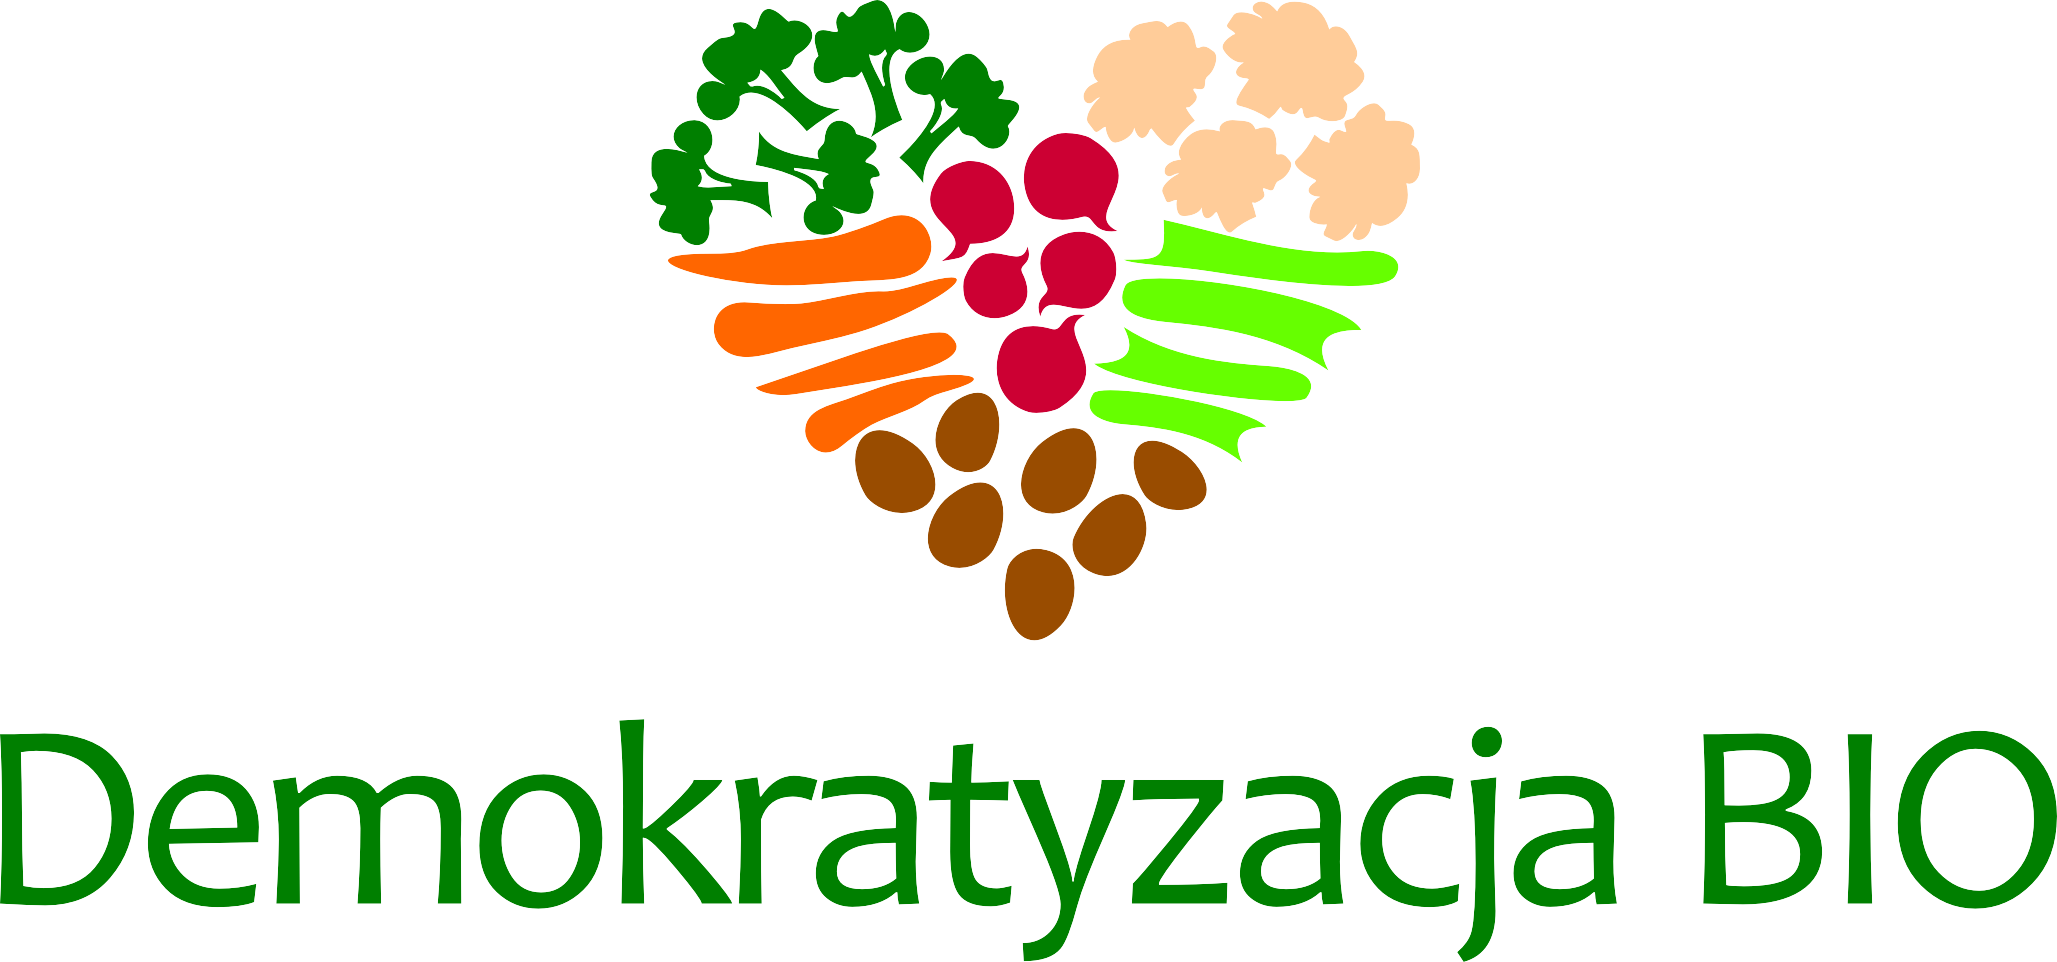 Fundacja Carrefour wspiera polskie rolnictwo ekologiczne